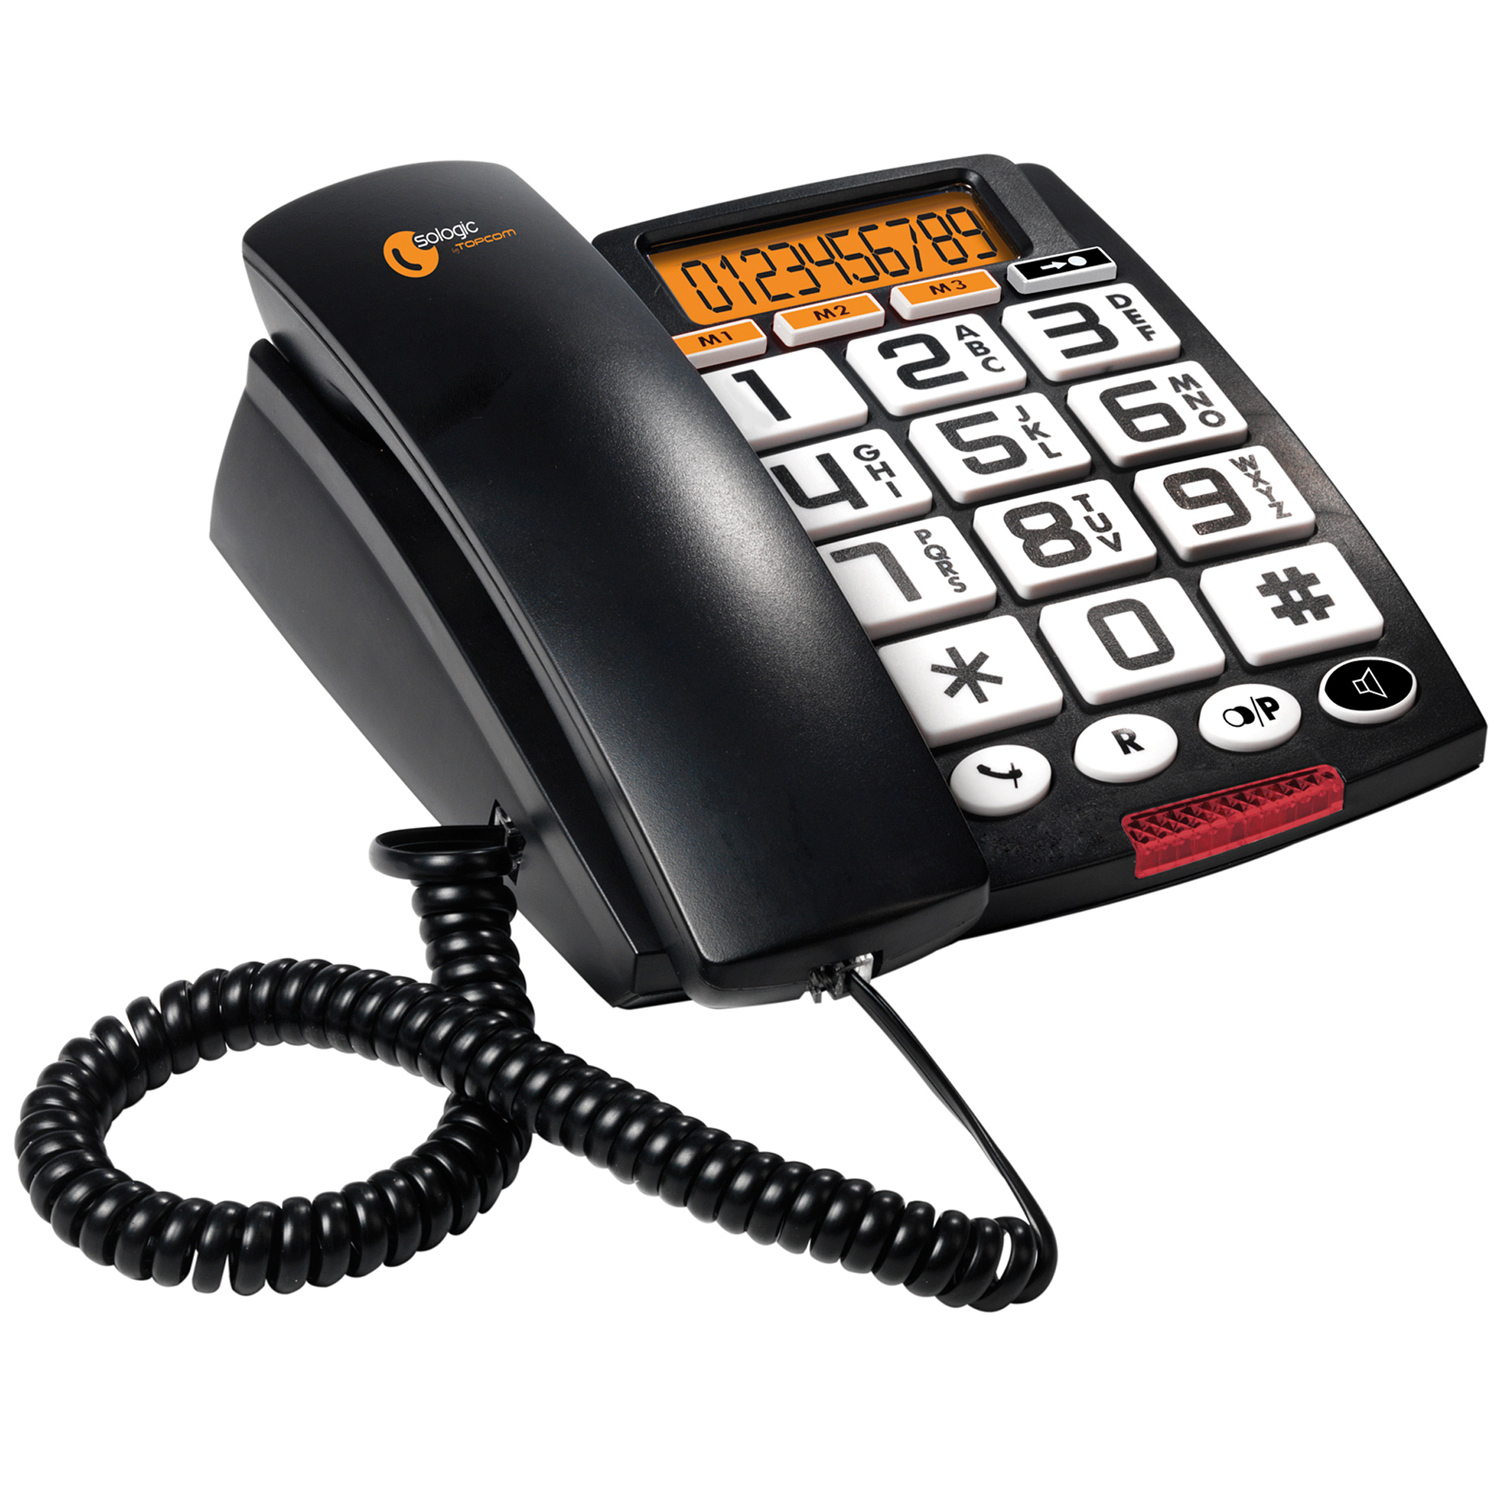 Стационарные телефоны для пожилых. Телефон Topcom 150. Телефон Topcom Allure 200. Радиотелефон для слабовидящих. Стационарный мобильный телефон для пожилых людей.